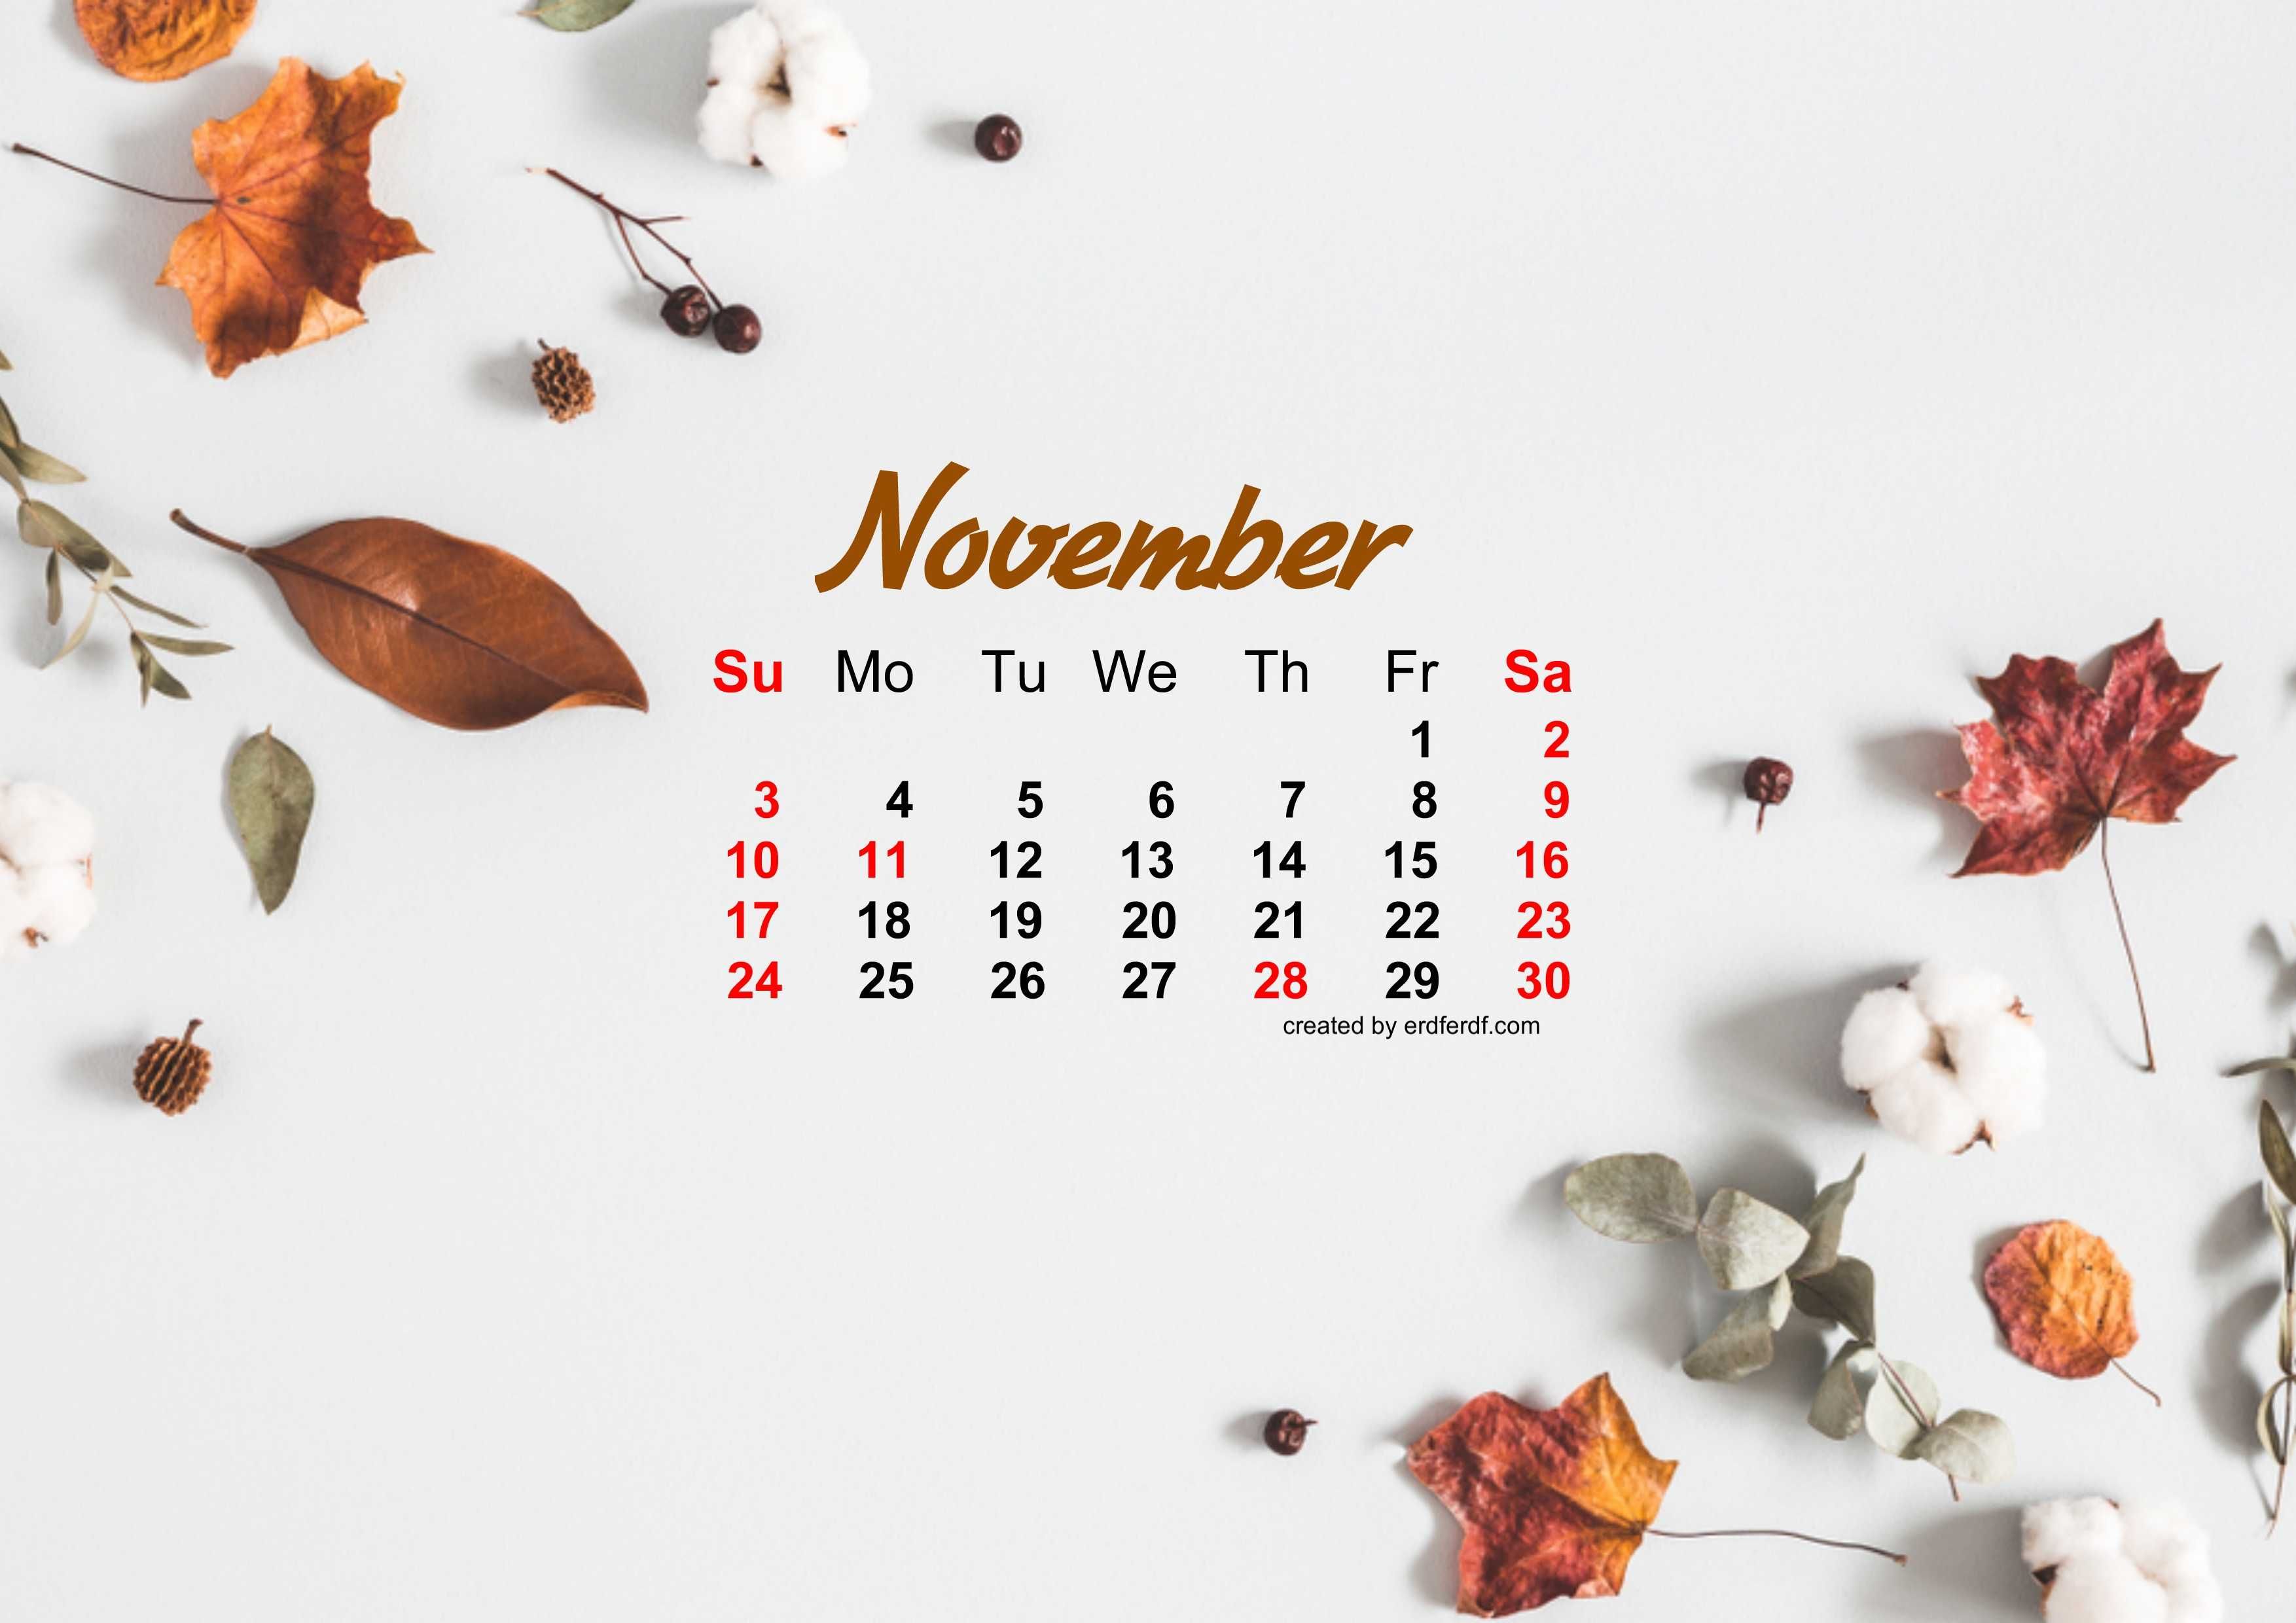 46+ November 2019 Calendar Wallpapers on WallpaperSafari